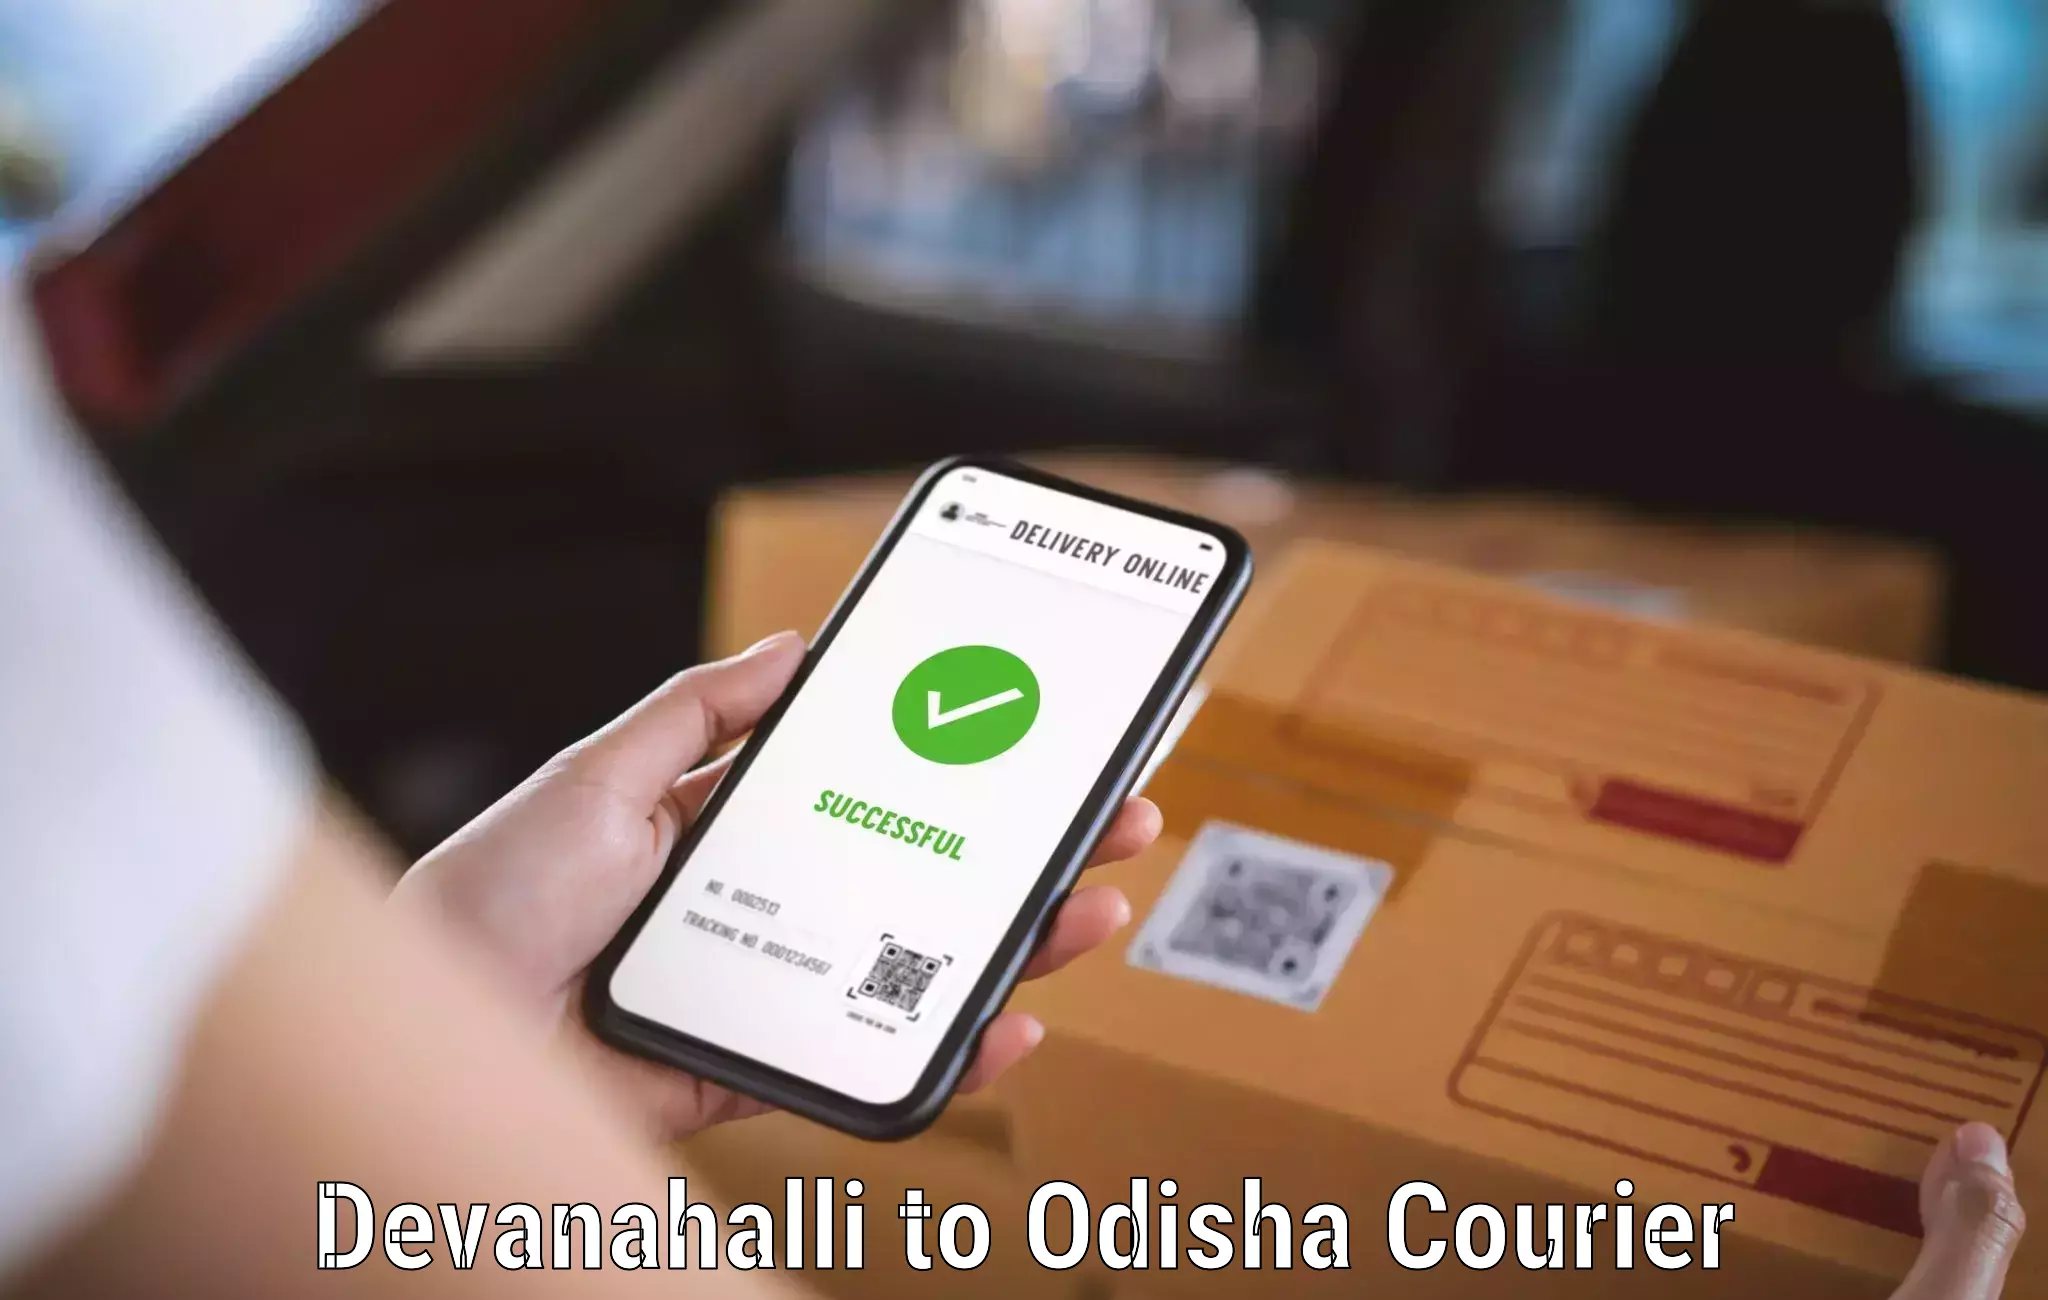 Courier app Devanahalli to Sohela